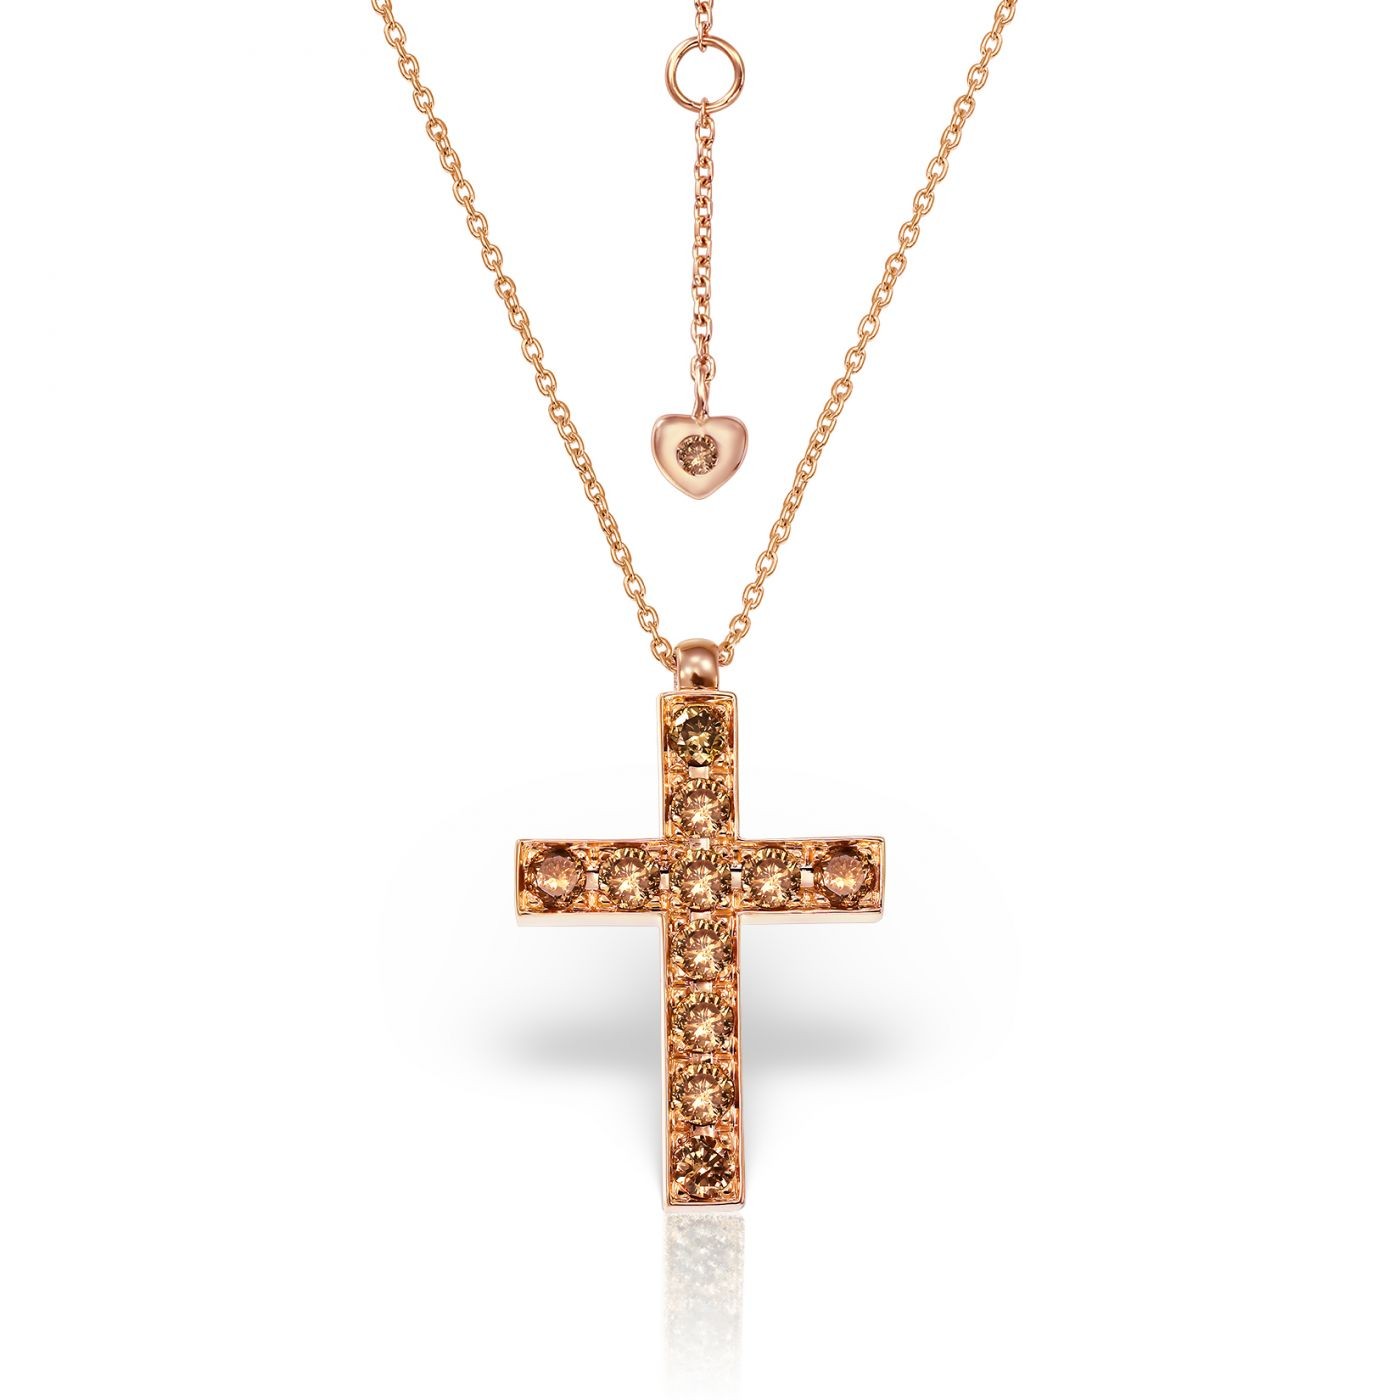 Lant cu pandantiv cruce Maria Granacci aur roz 18k cu diamante